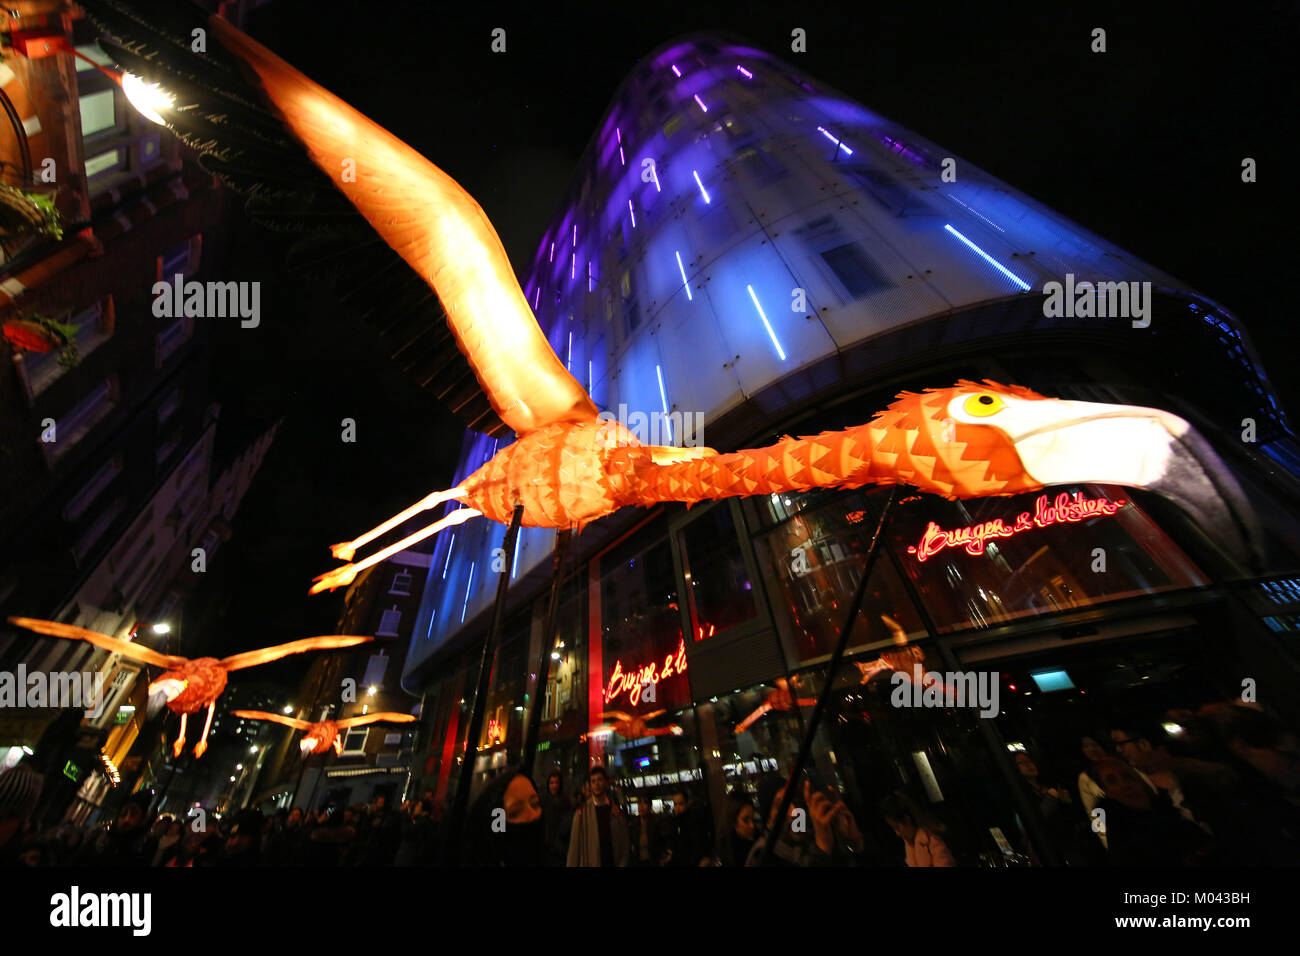 Londres, Royaume-Uni. 18 janvier, 2018. Par voie de Flamingo Company lanterne dans le quartier chinois dans le cadre de la Lumière Lumière Londres Festival à Londres Crédit : Paul Brown/Alamy Live News Banque D'Images